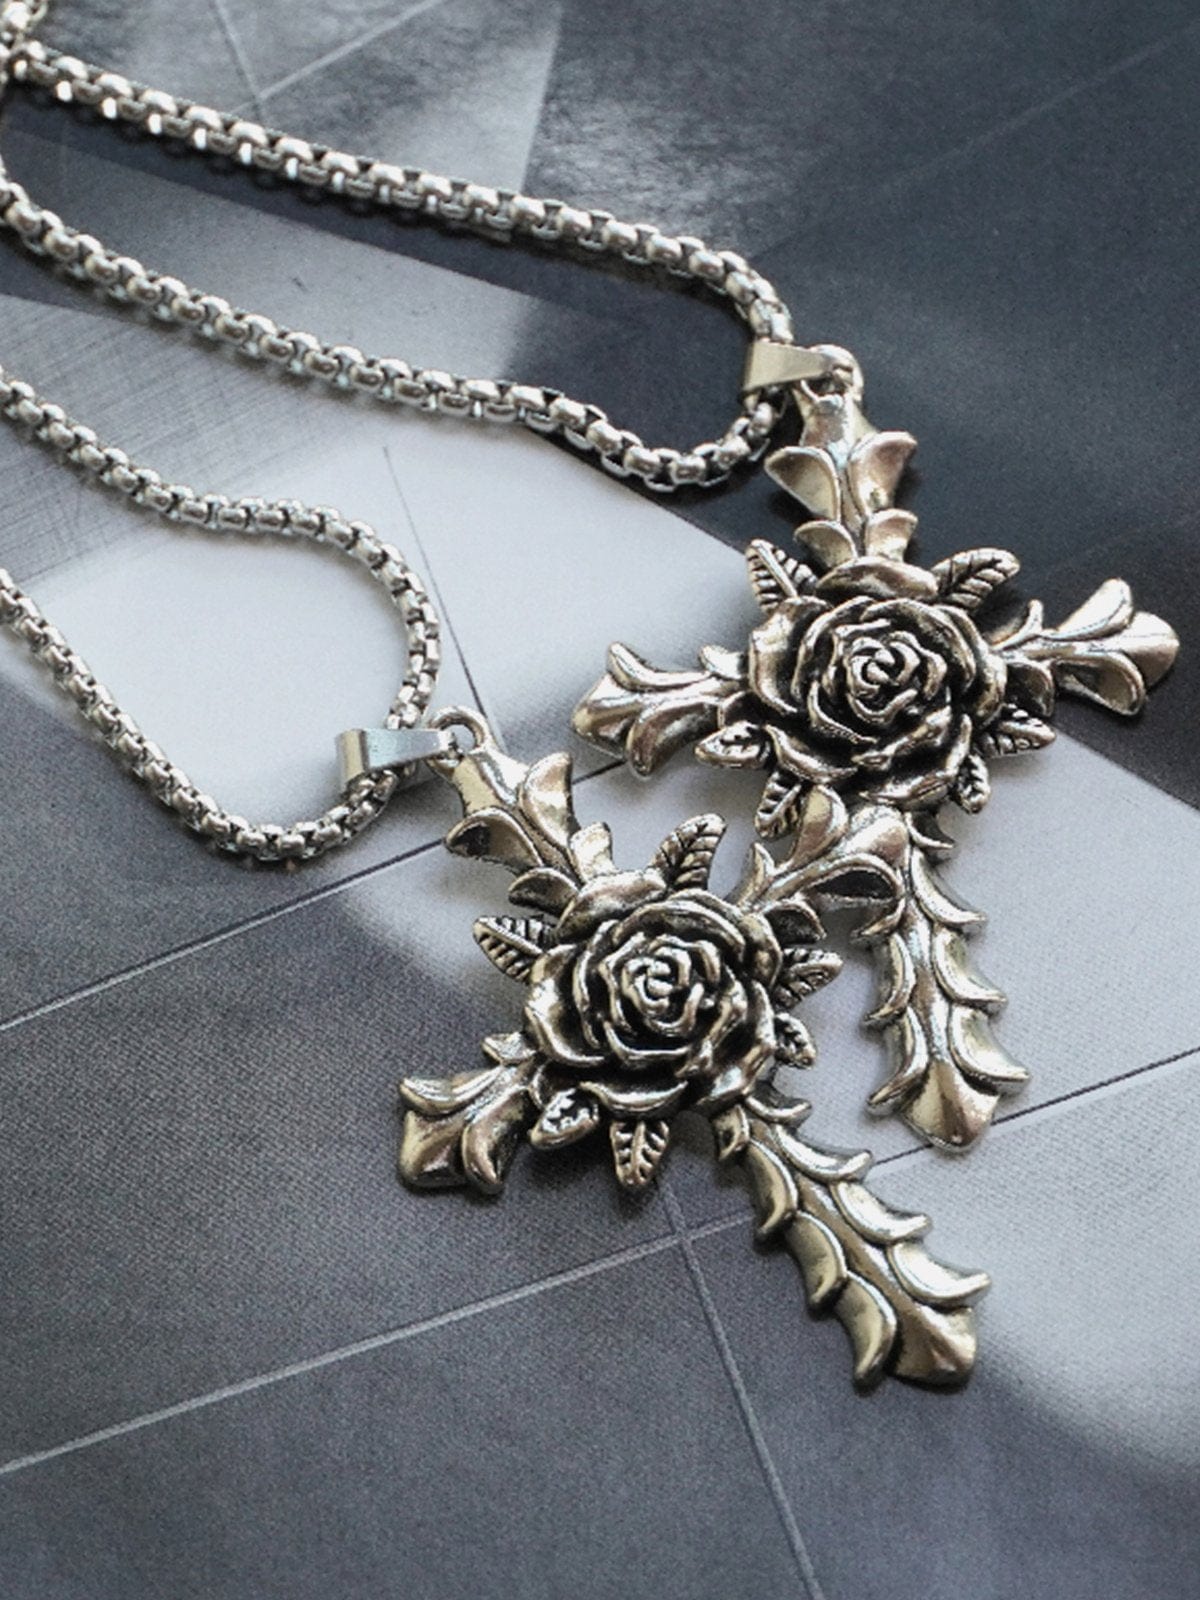 NEV Rose Cross Necklace